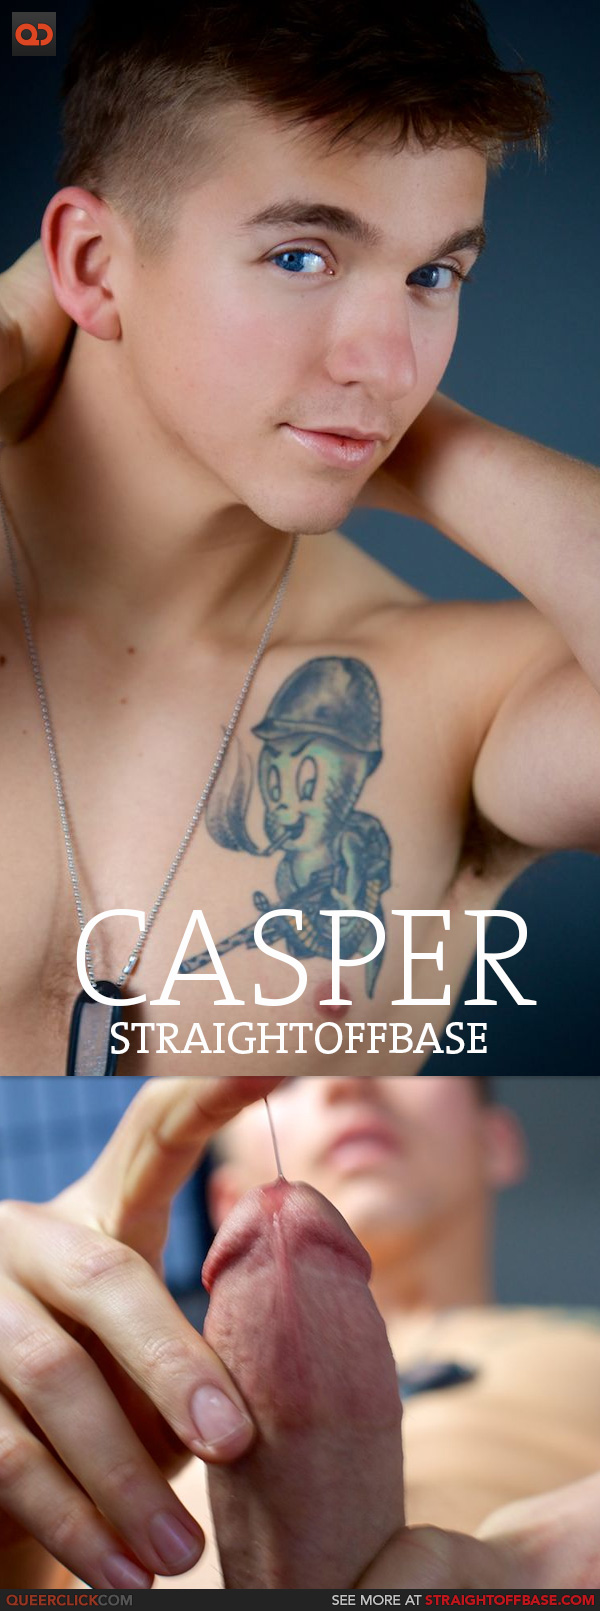 Straight Off Base: Corporal Casper